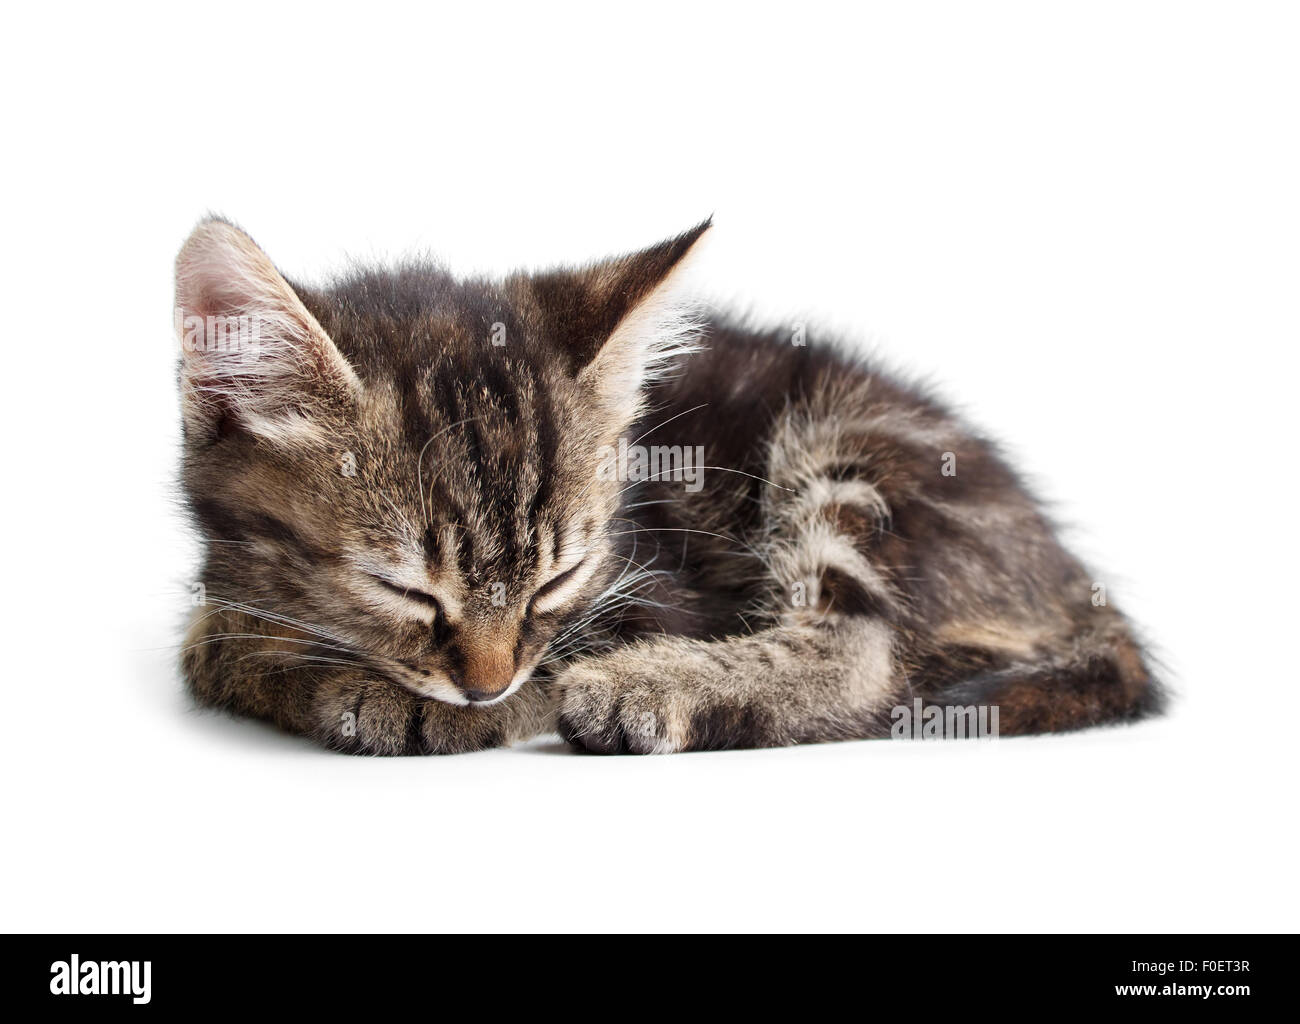 Little kitten sleeping isolated on white background Stock Photo